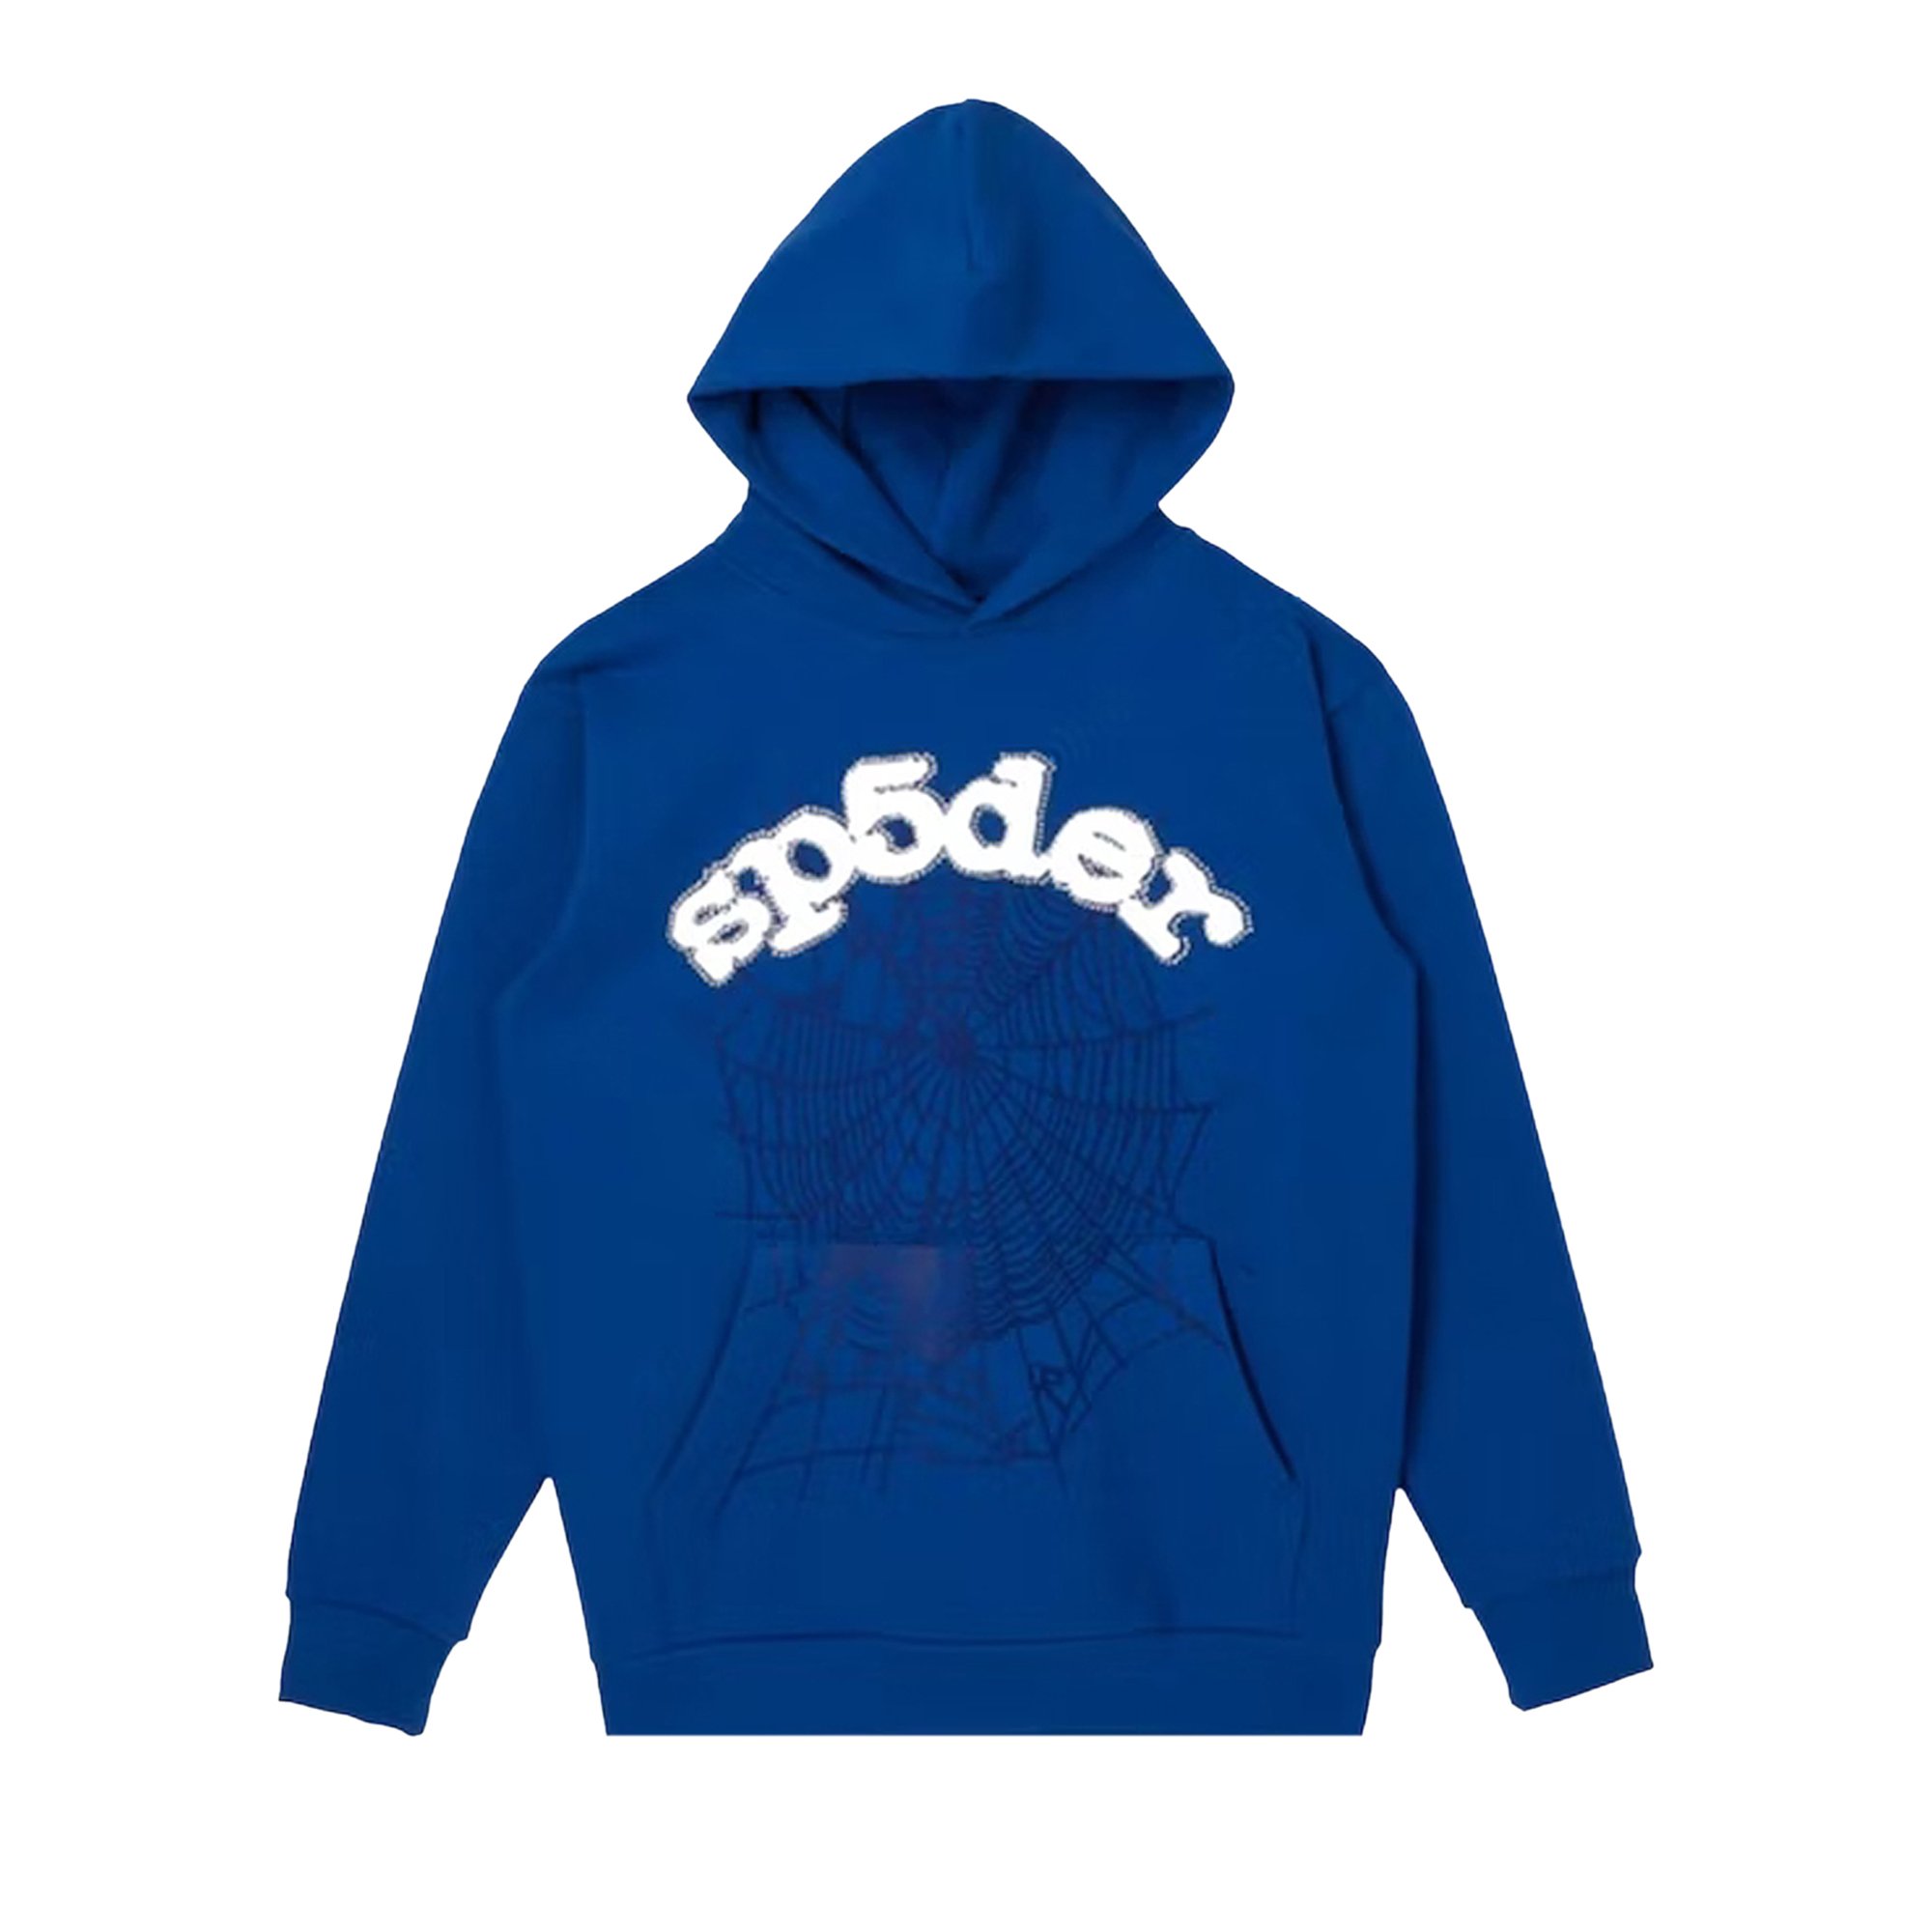 Sp5der Logo Hoodie 'Blue'